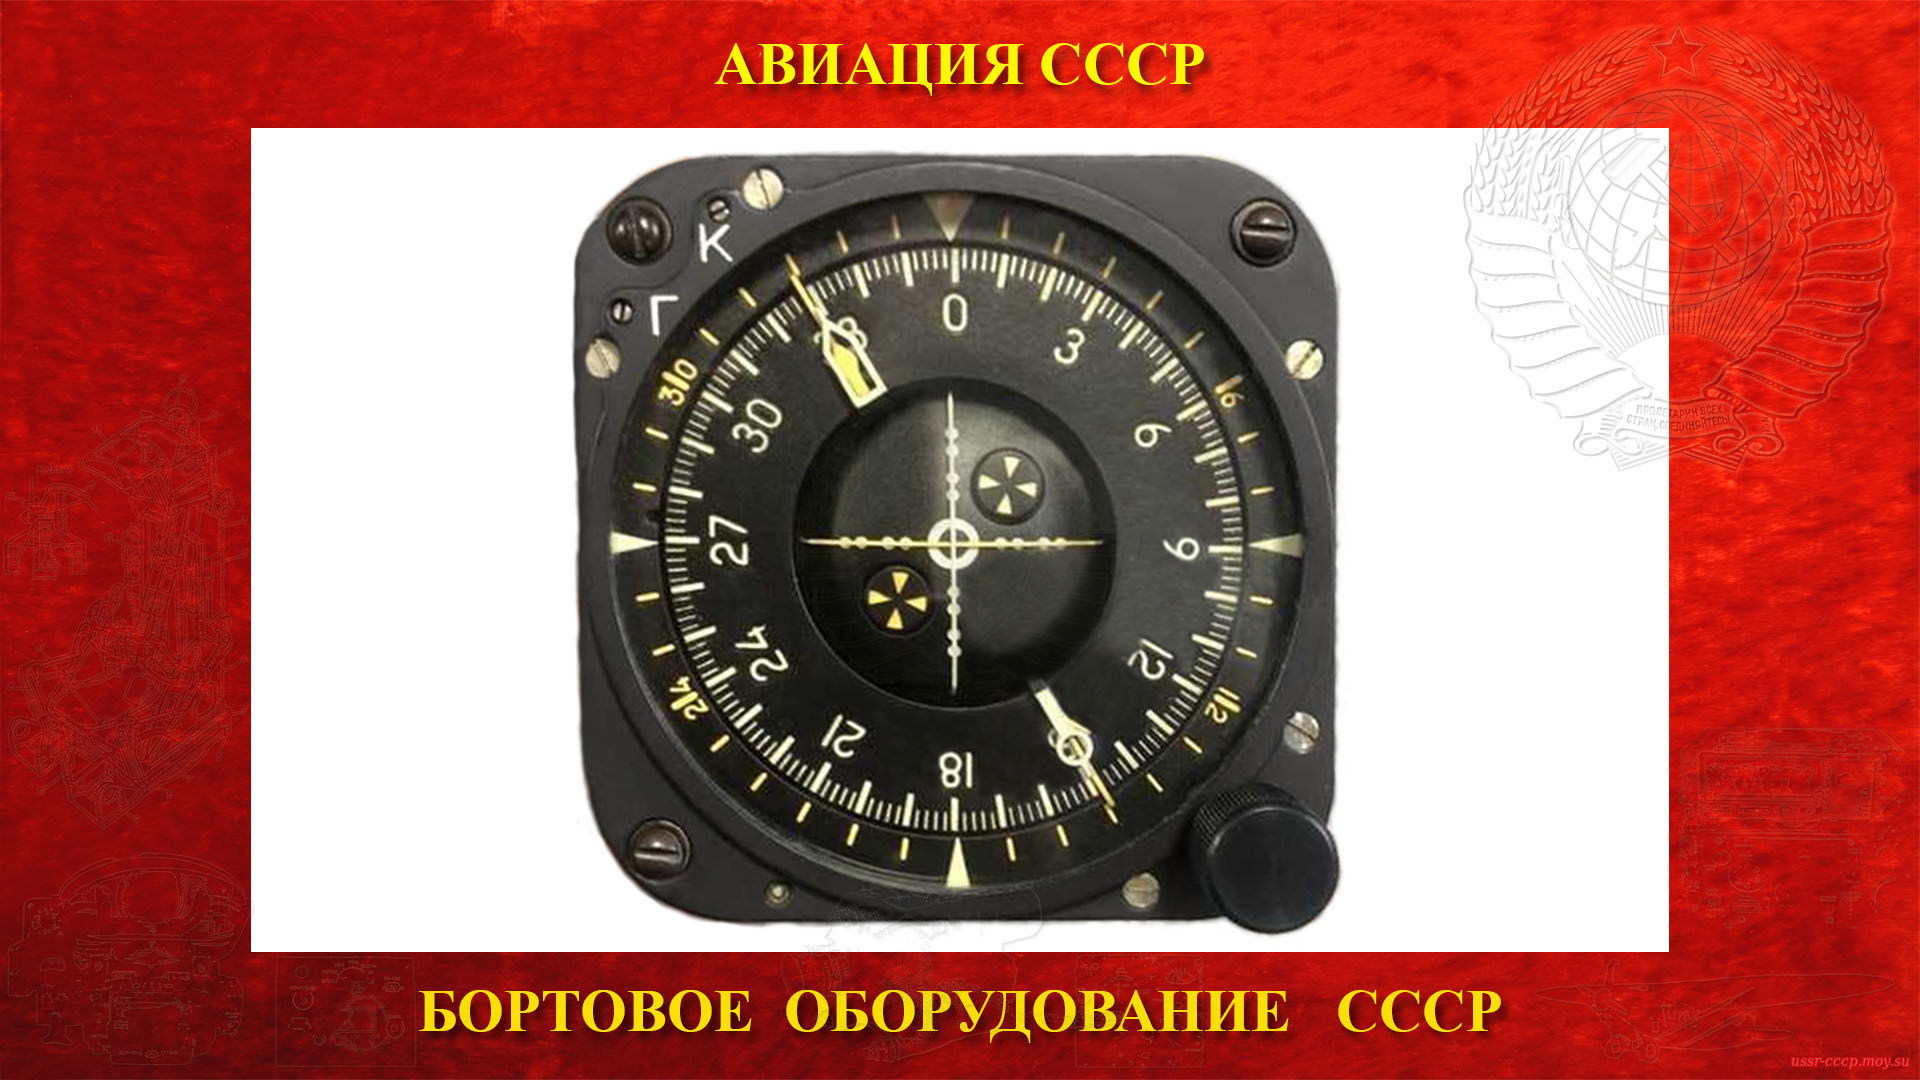 НКП-4 — Навигационный курсовой прибор